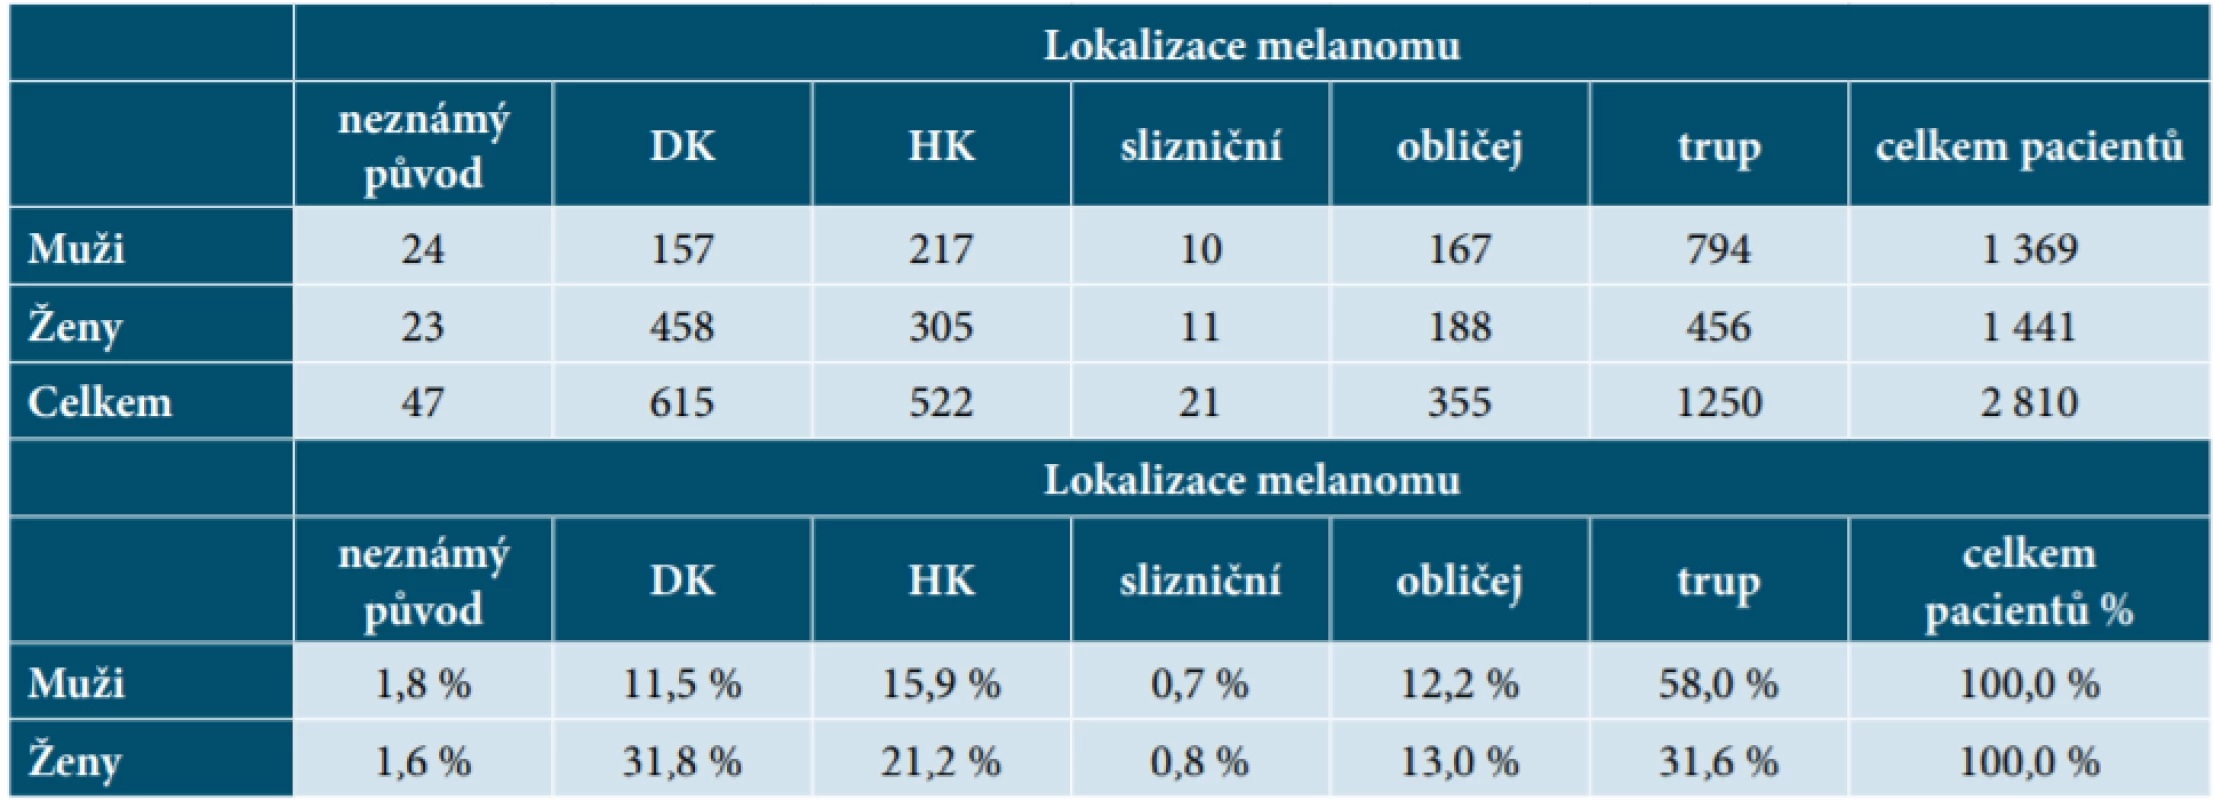 Počet pacientů (muži, ženy) podle lokalizace melanomu 